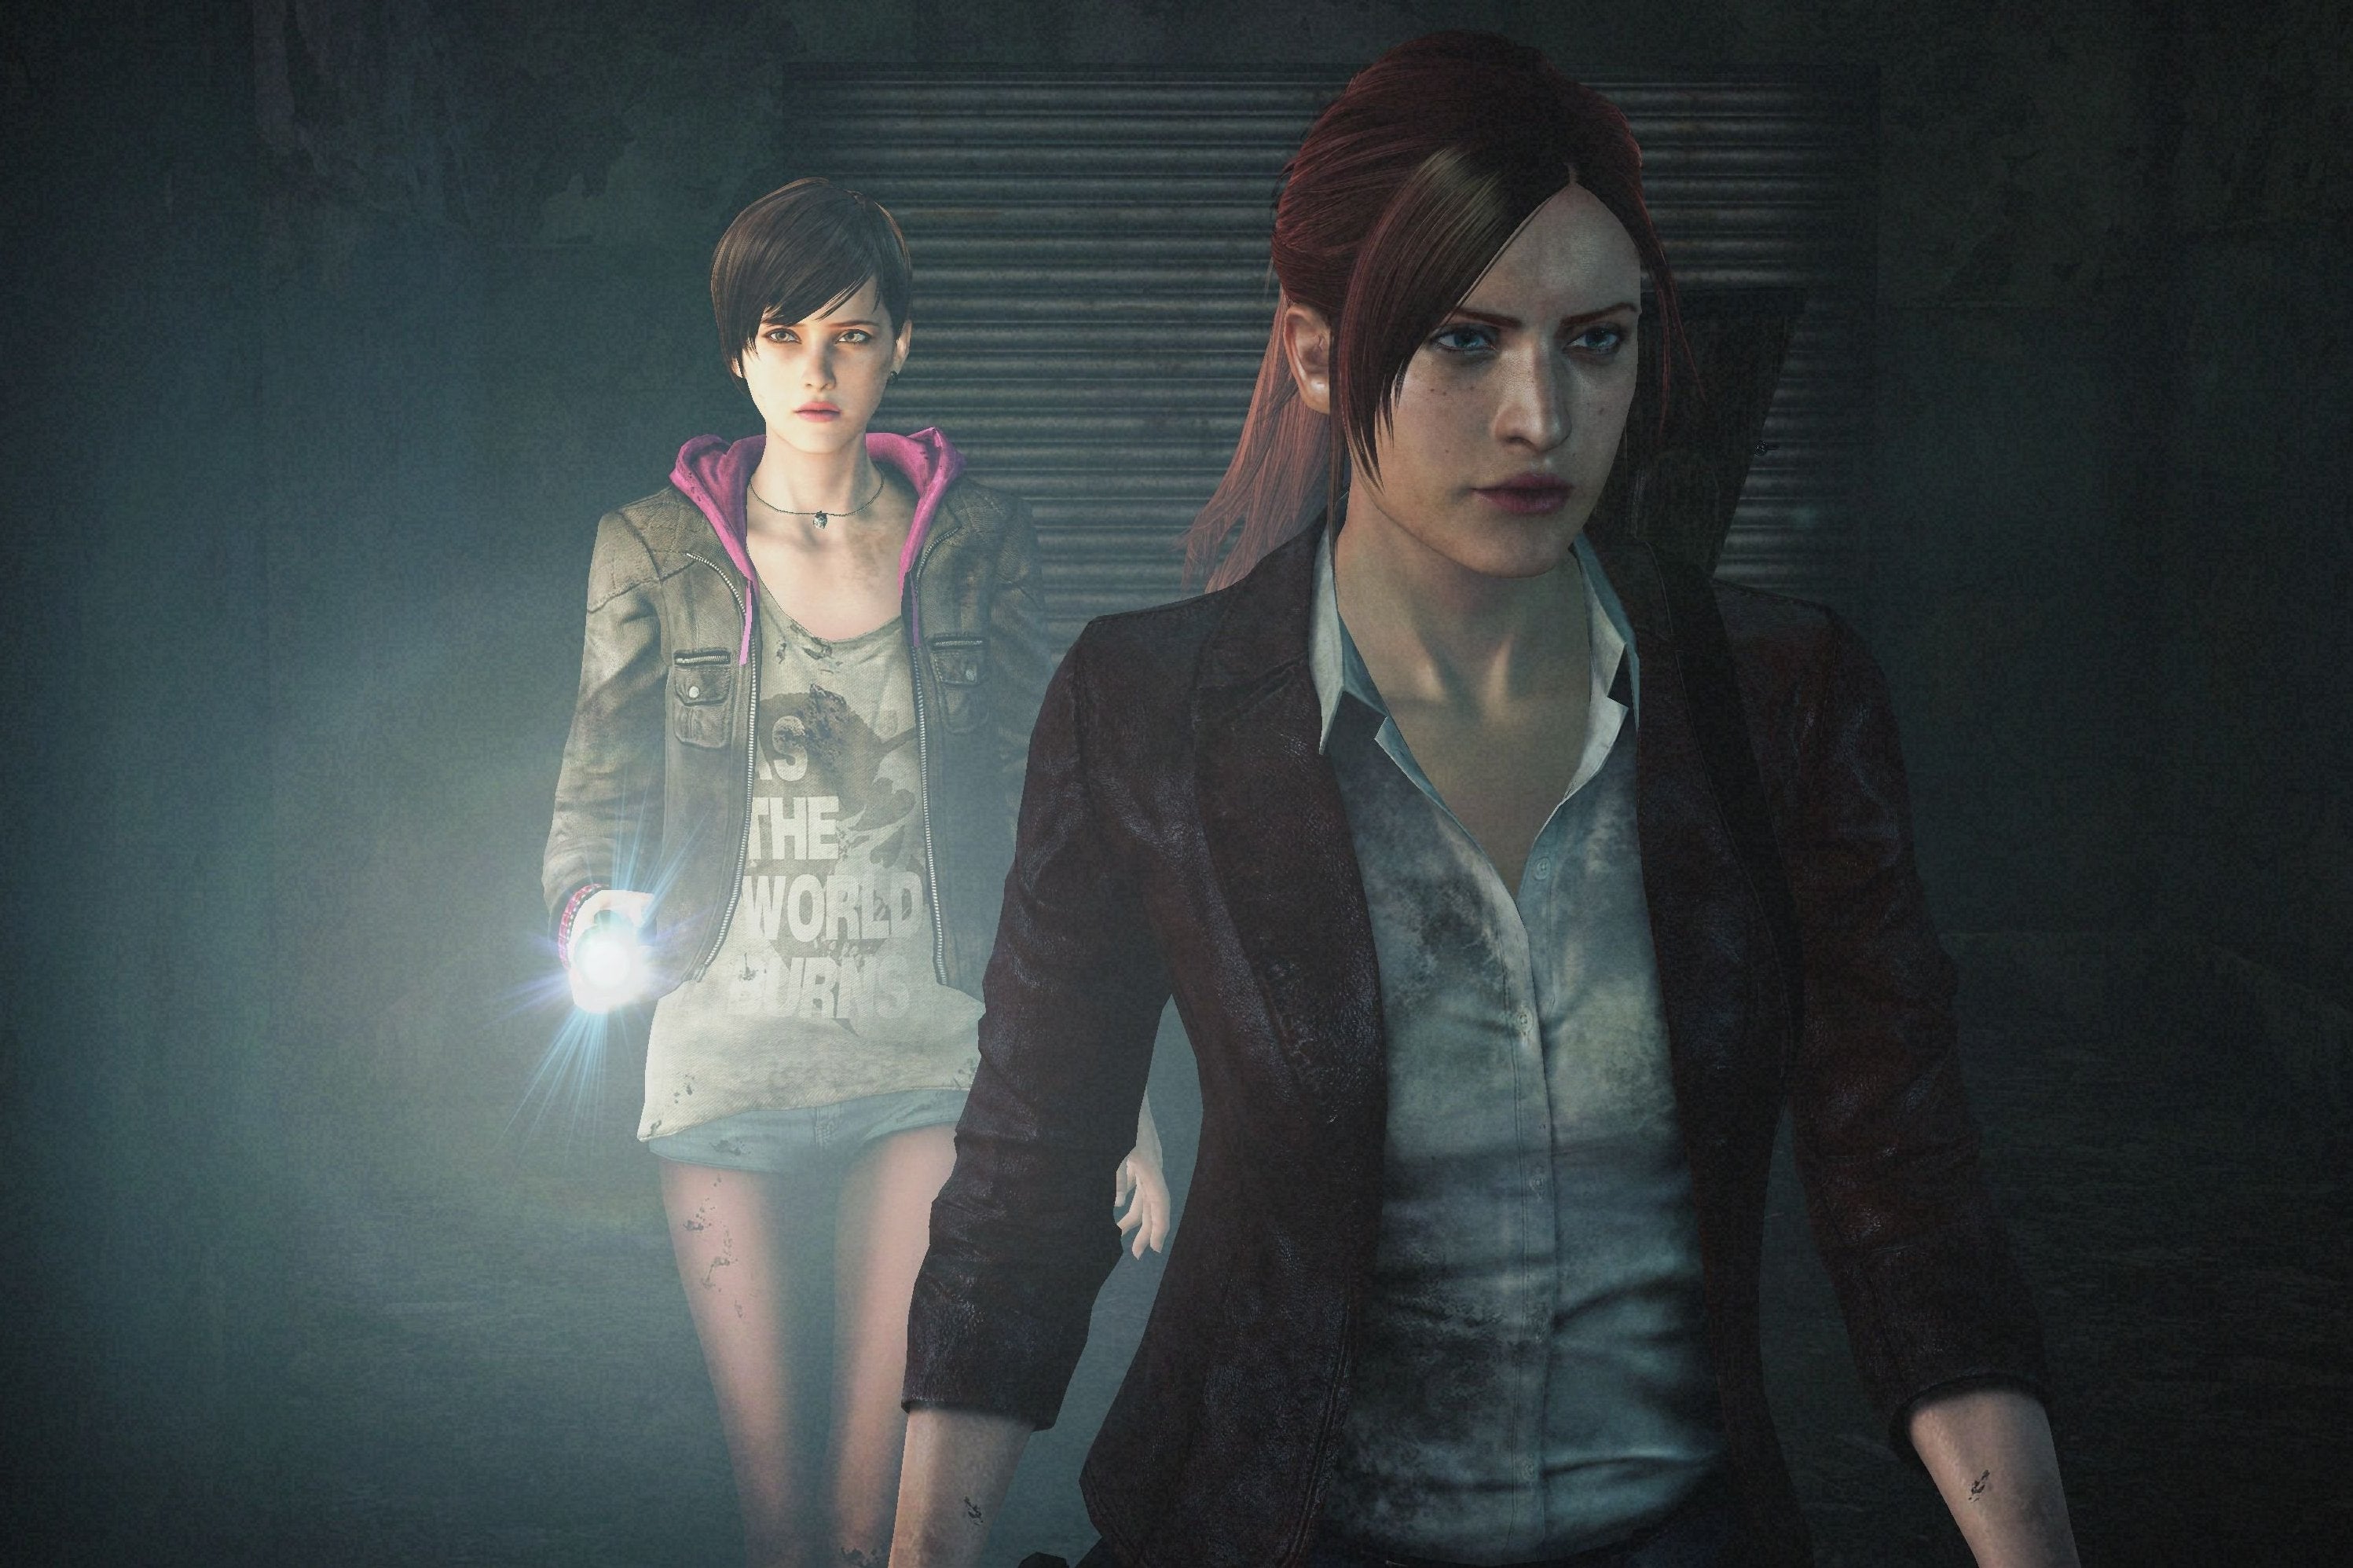 Image for Sony website mentions Resident Evil Revelations 2 for Vita